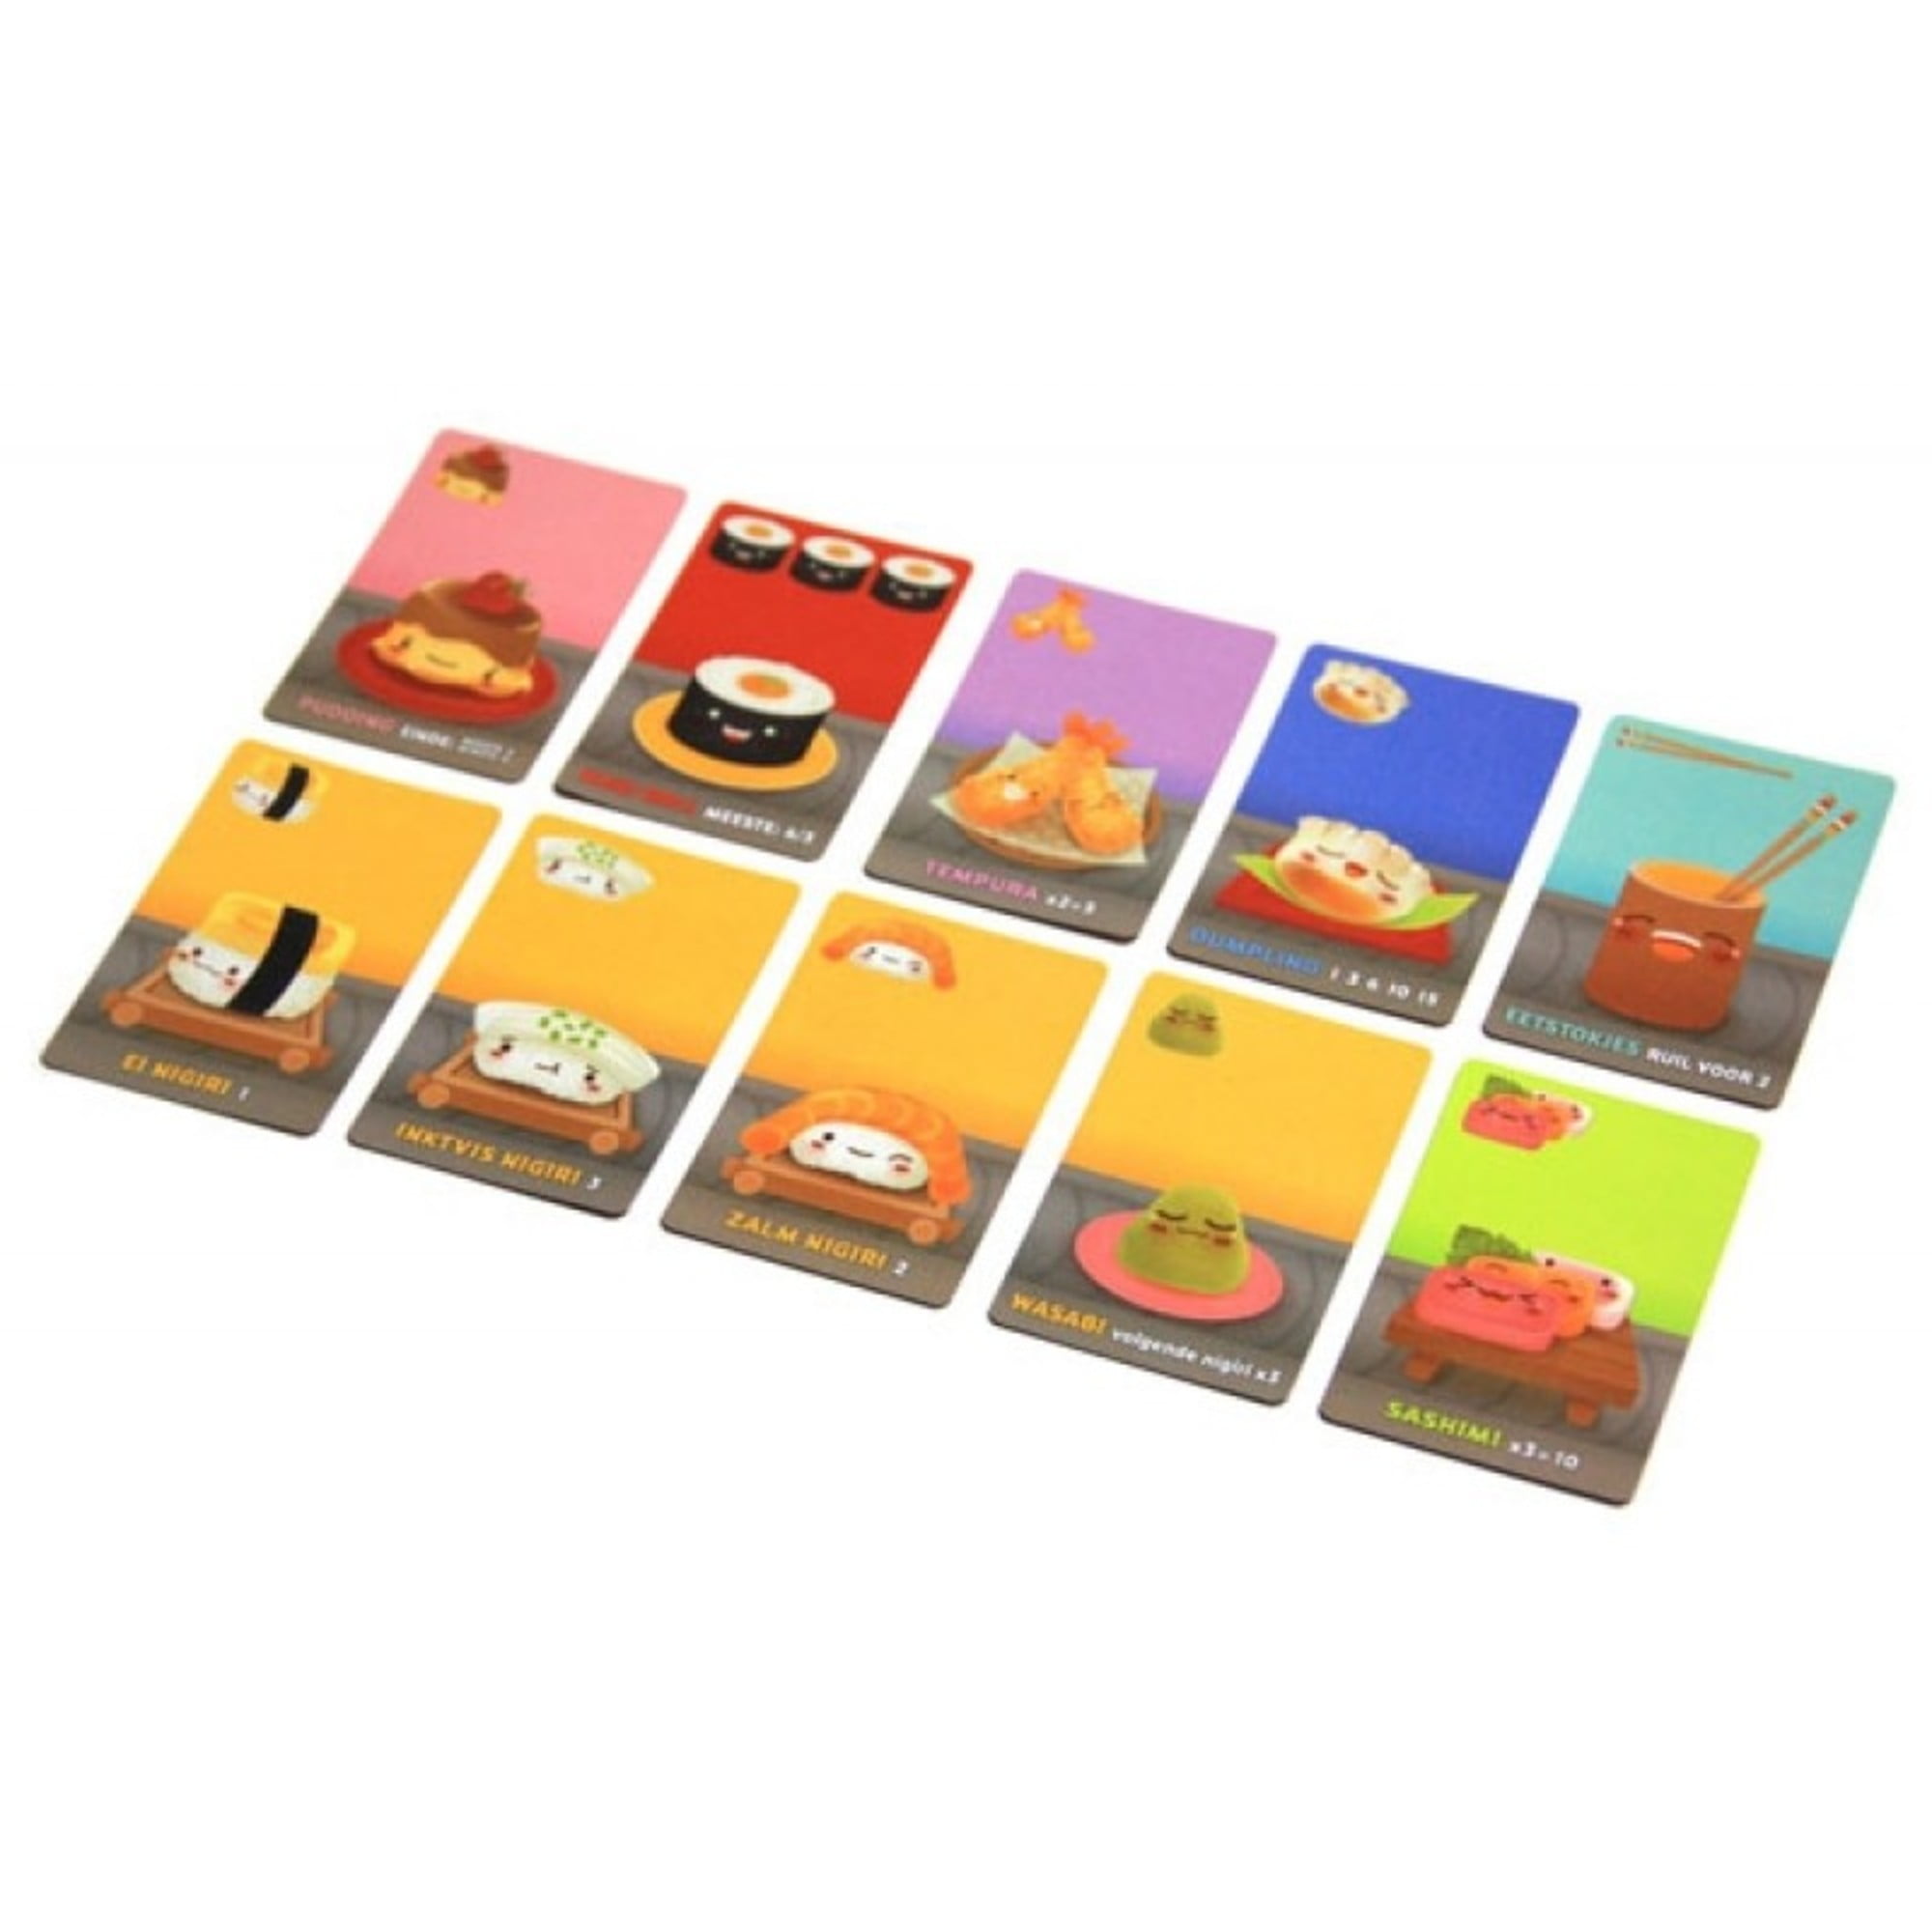 Sushi Go! - Jogos de Cartas - Compra na